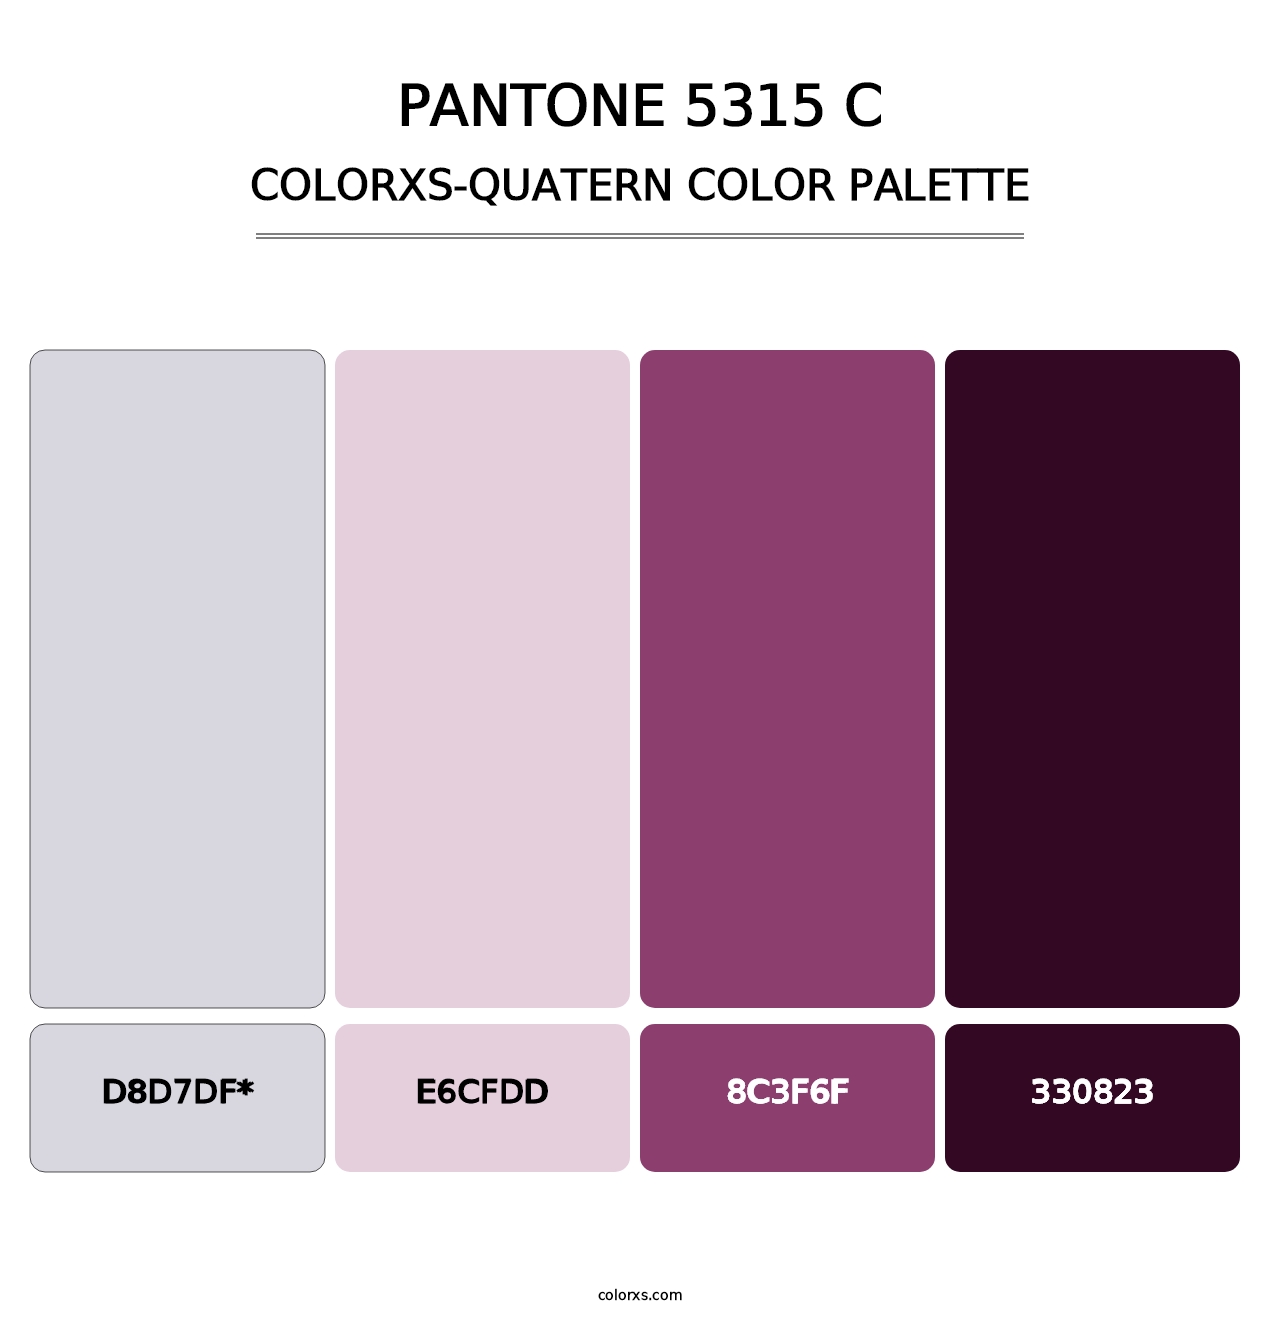 PANTONE 5315 C - Colorxs Quatern Palette